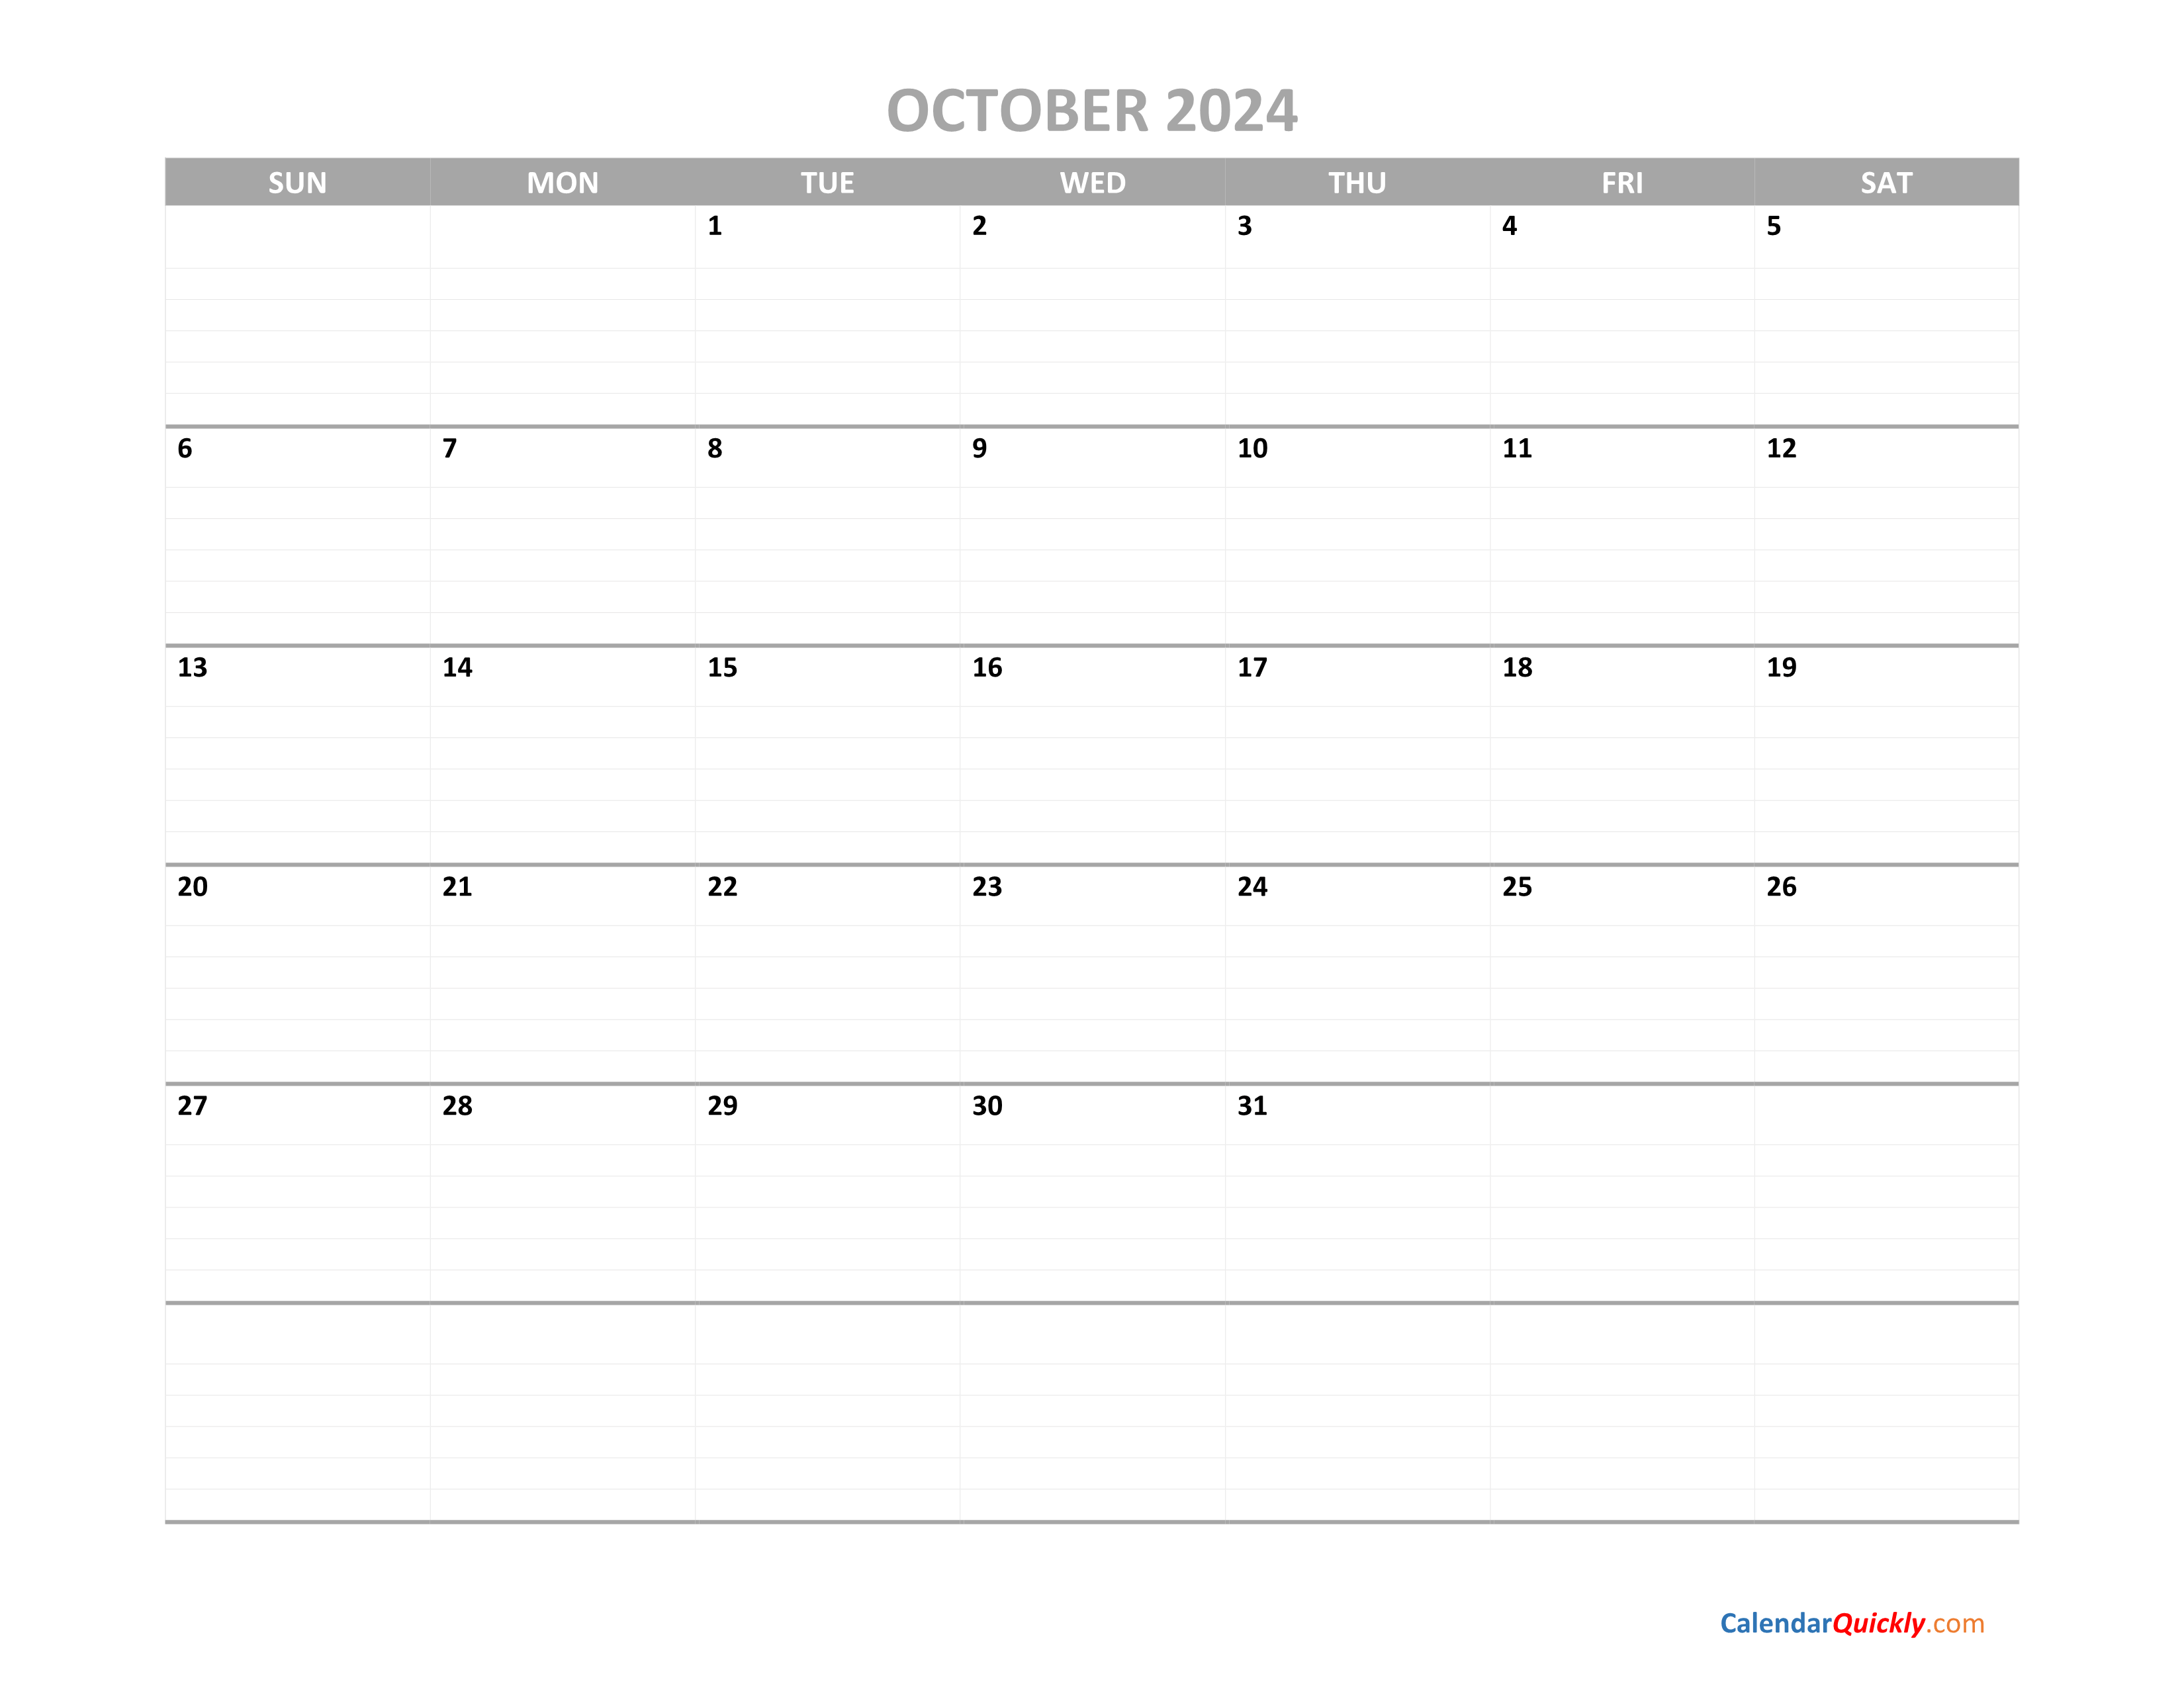 october-calendar-2024-printable-calendar-quickly